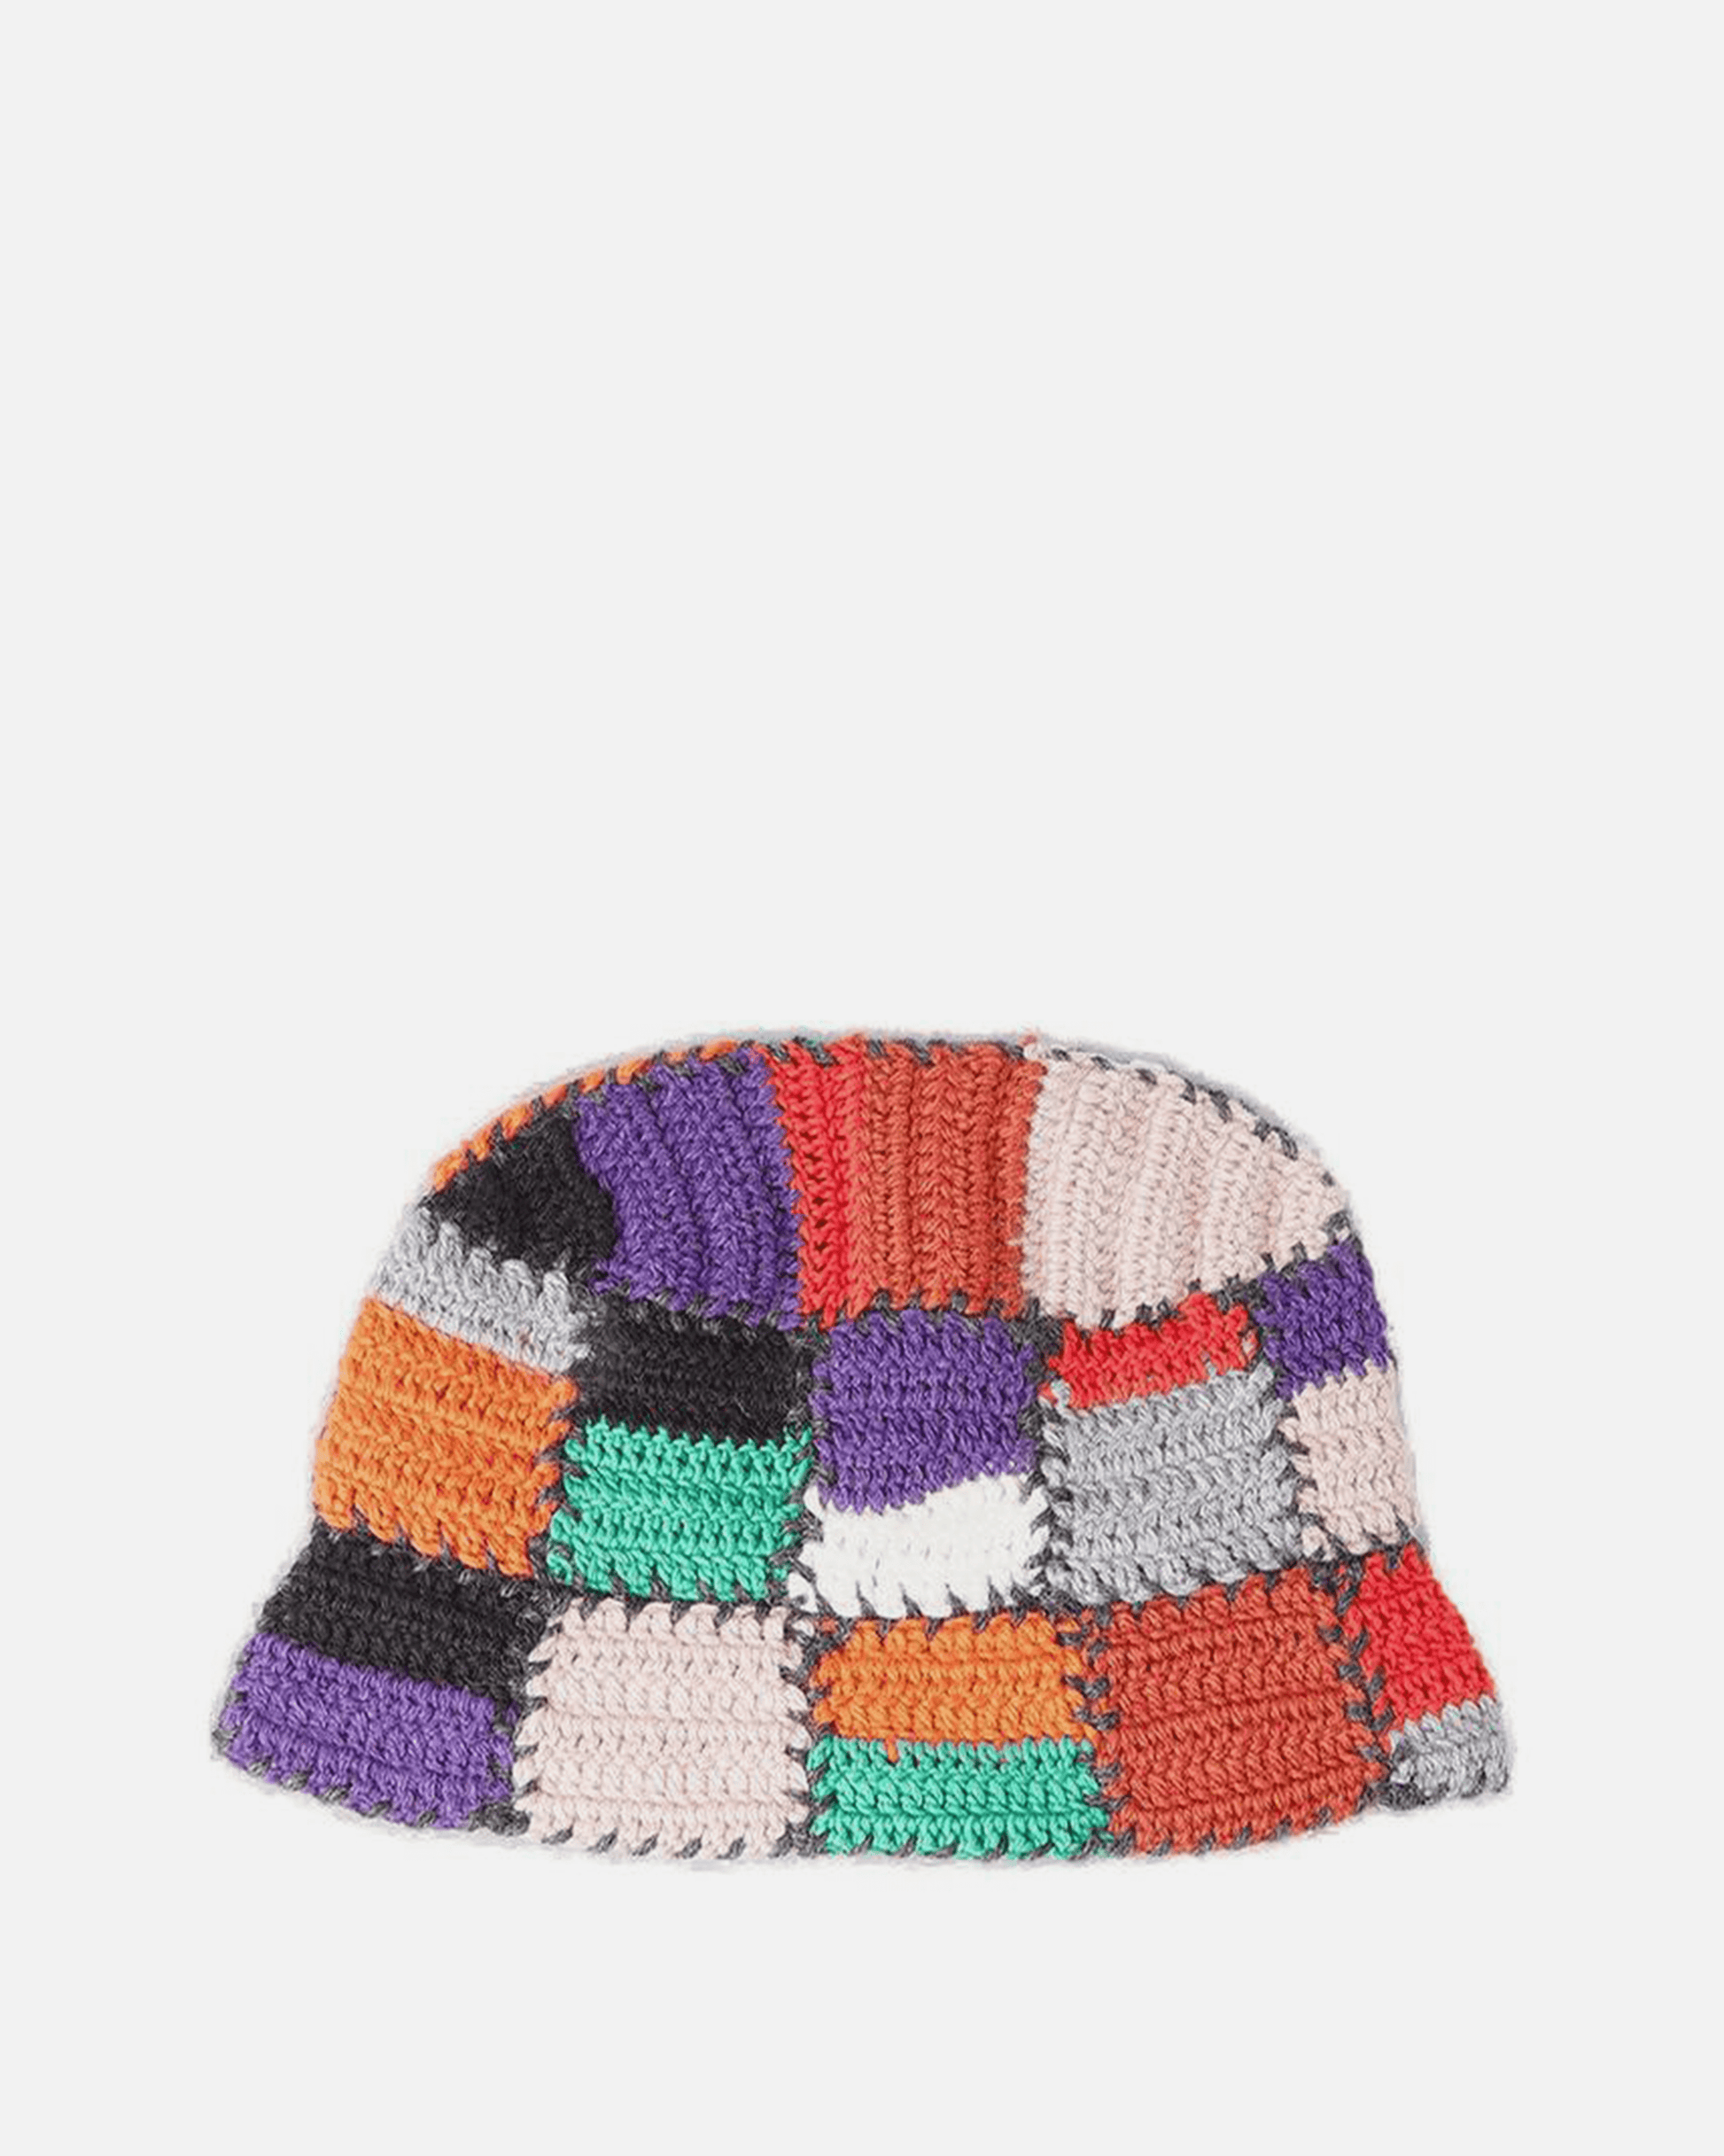 Marni Men's Hats Crochet Bucket Hat in Multi